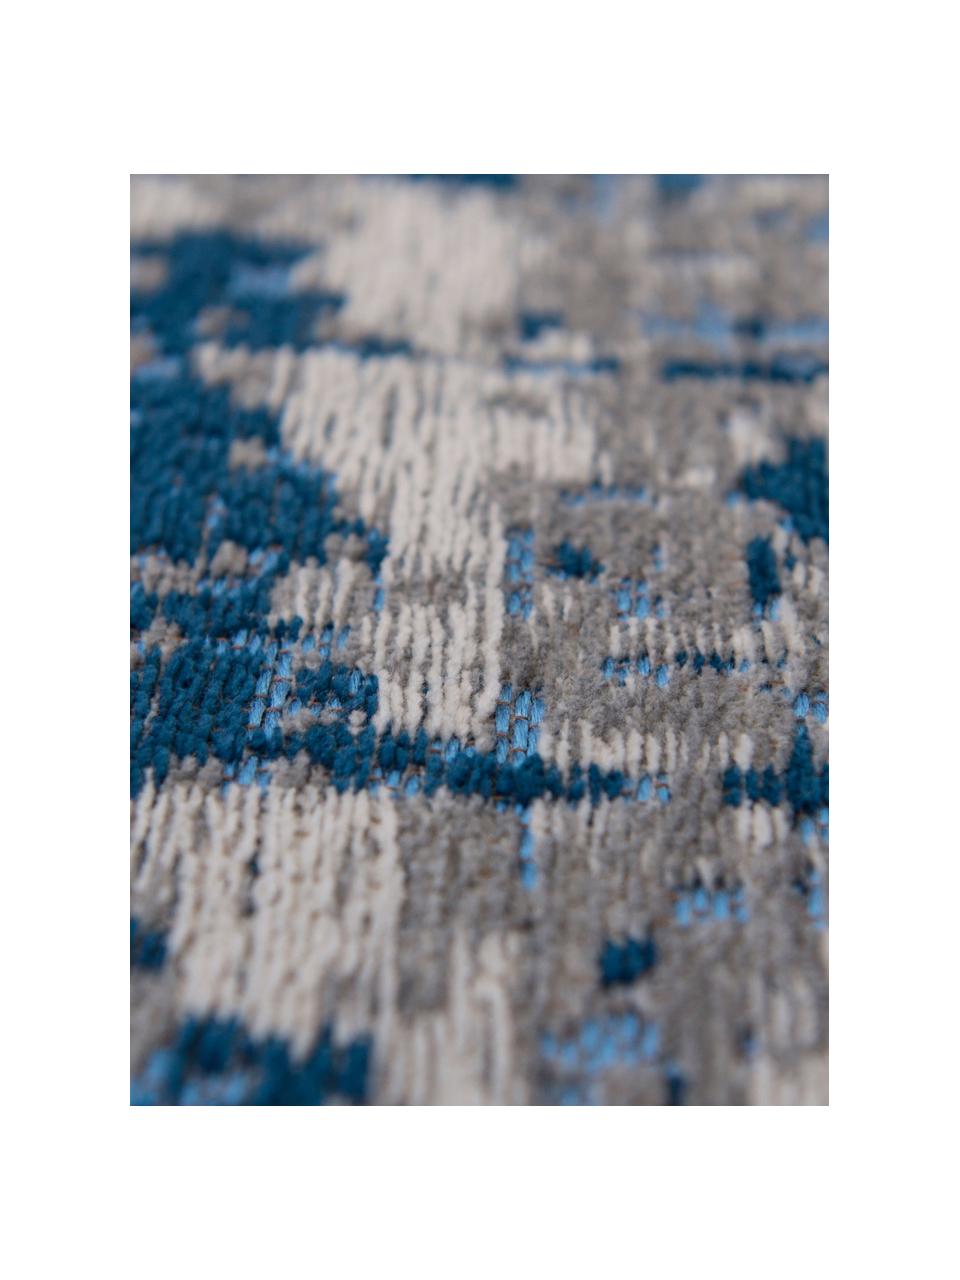 Tappeto vintage di design Griff, Retro: misto cotone rivestito in, Tonalità blu e grigie, Larg. 80 x Lung. 150 cm (taglia XS)